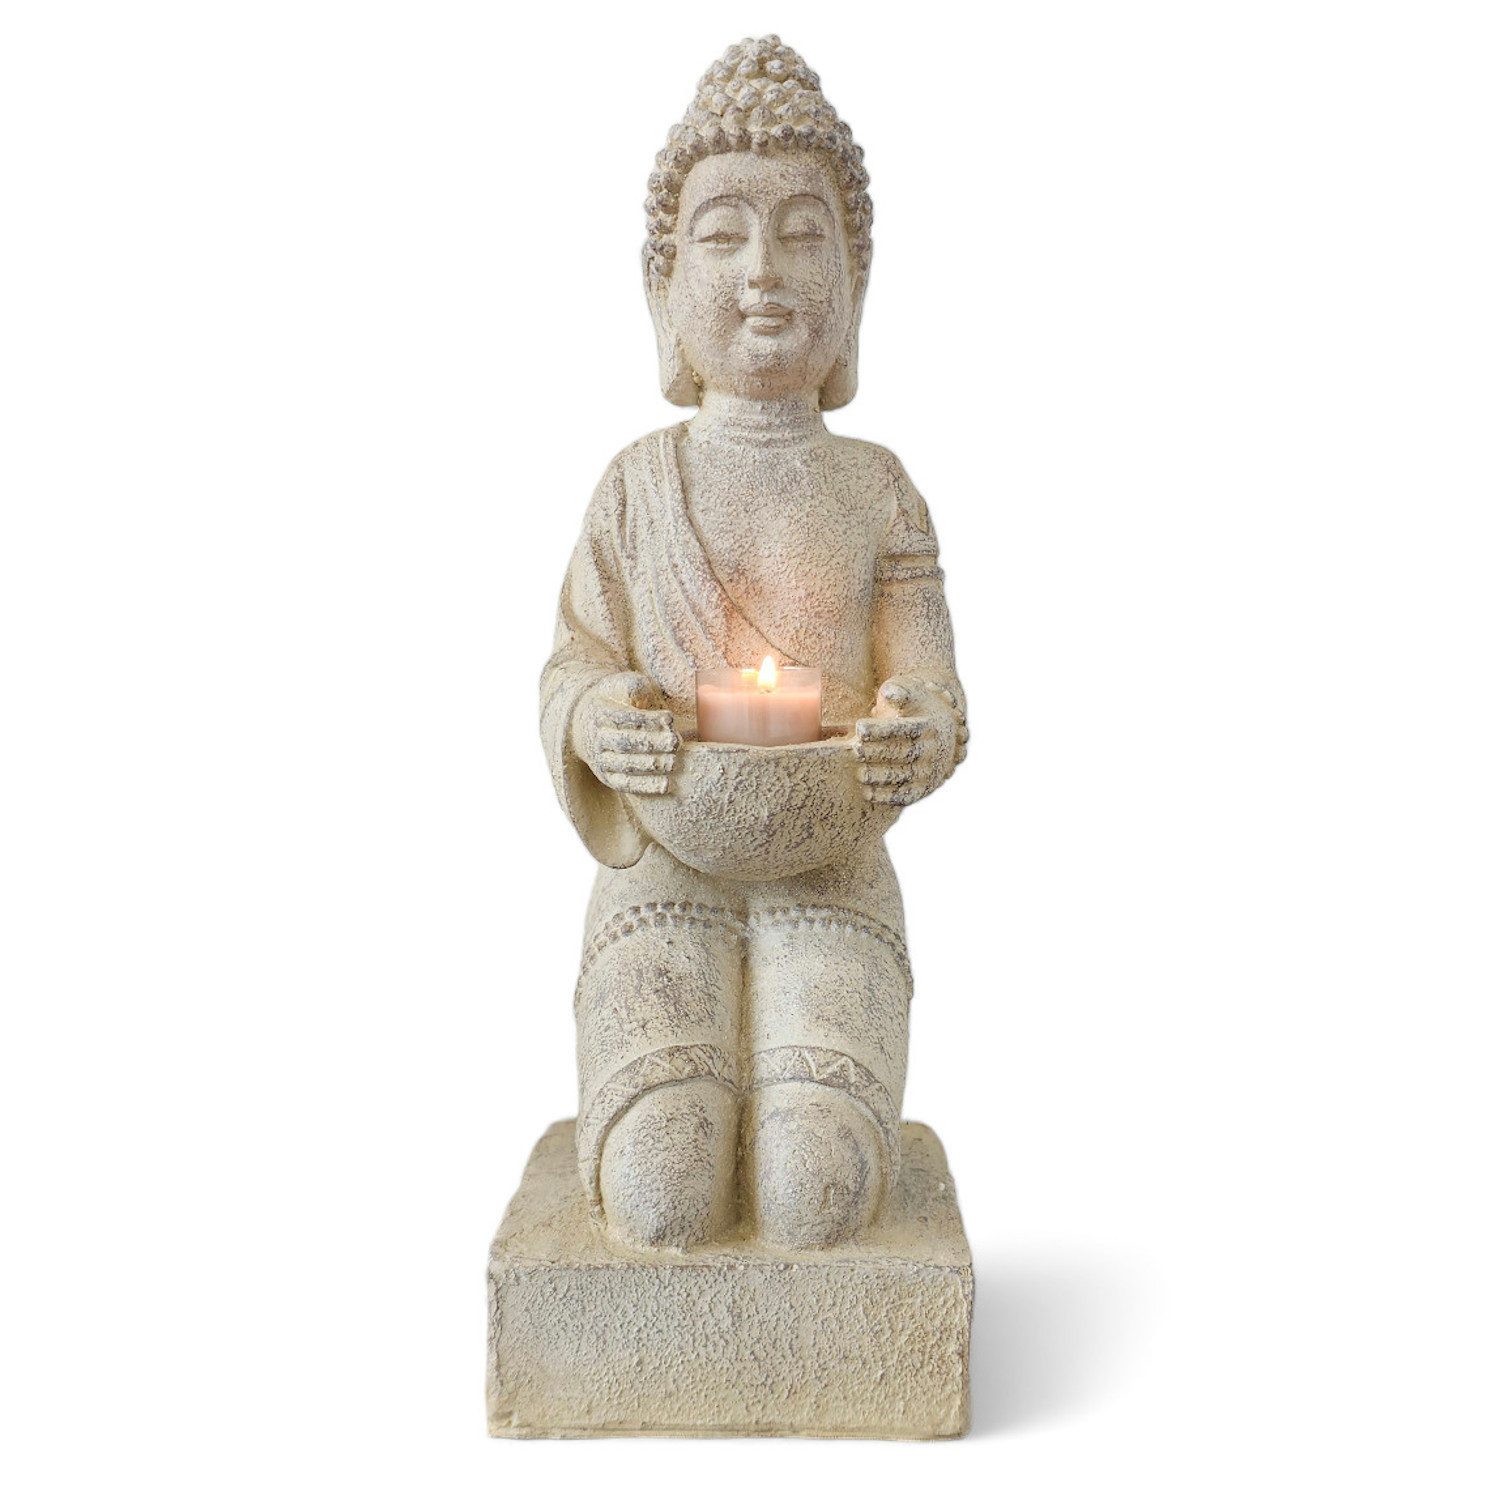 INtrenDU Buddhafigur Buddha Statue mit Teelichthalter creme 42cm